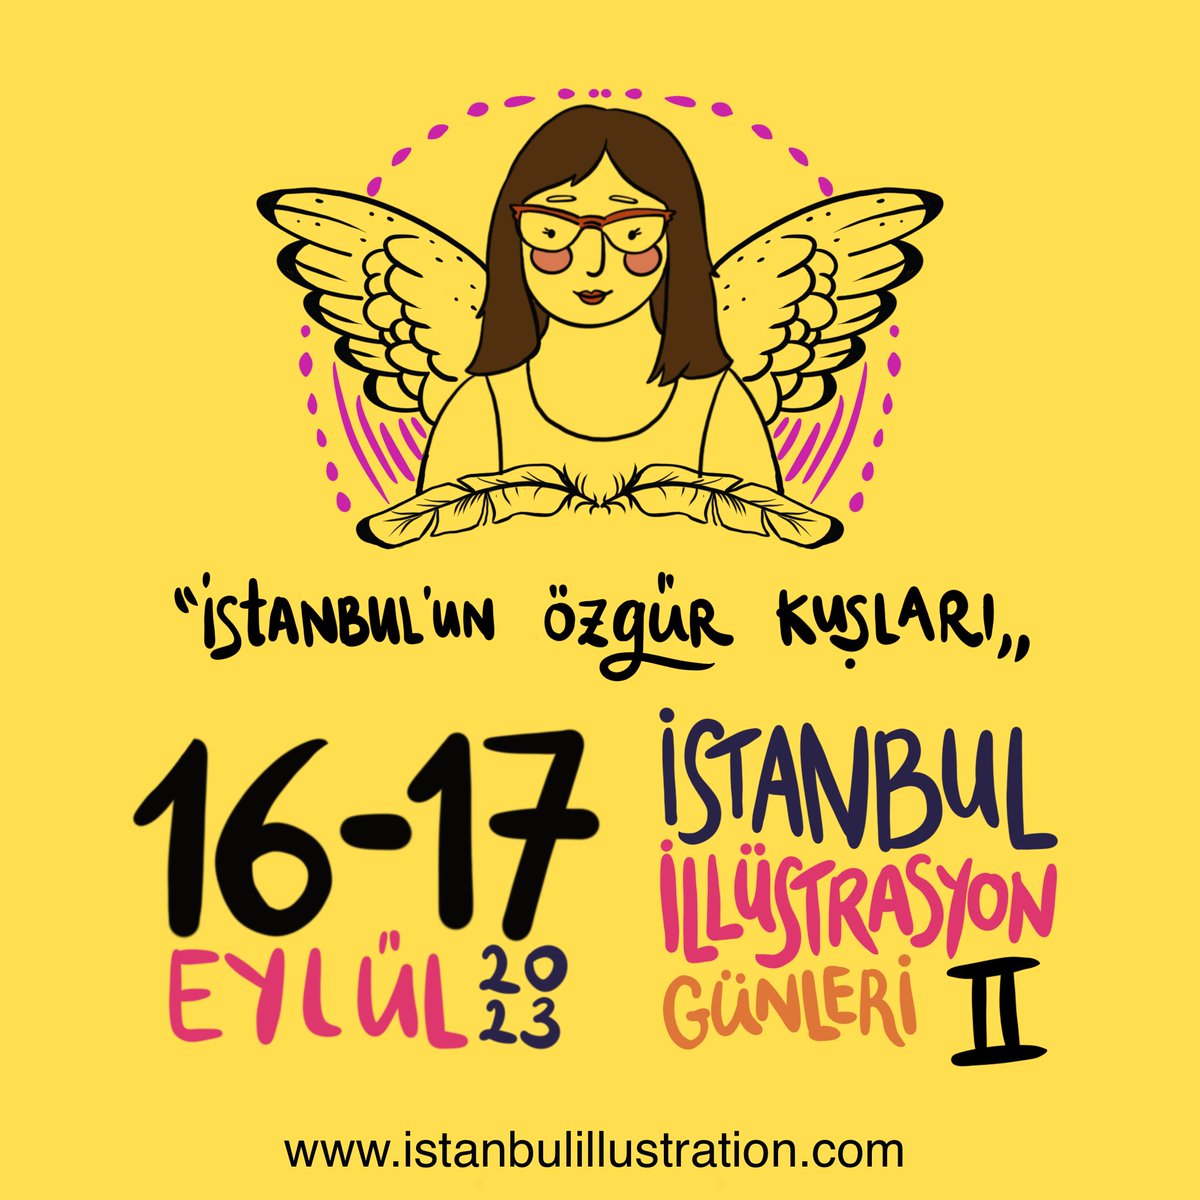 İstanbul İllüstrasyon Günleri Eylül'de... Yakında detaylı açıklama (konferans ve çizim etkinliği) ve program yapılacak. Bu seneki tema 'İstanbul'un Özgür Kuşları'... @istanbul_days #illüstrasyon #istanbulillustrationdays #illustration